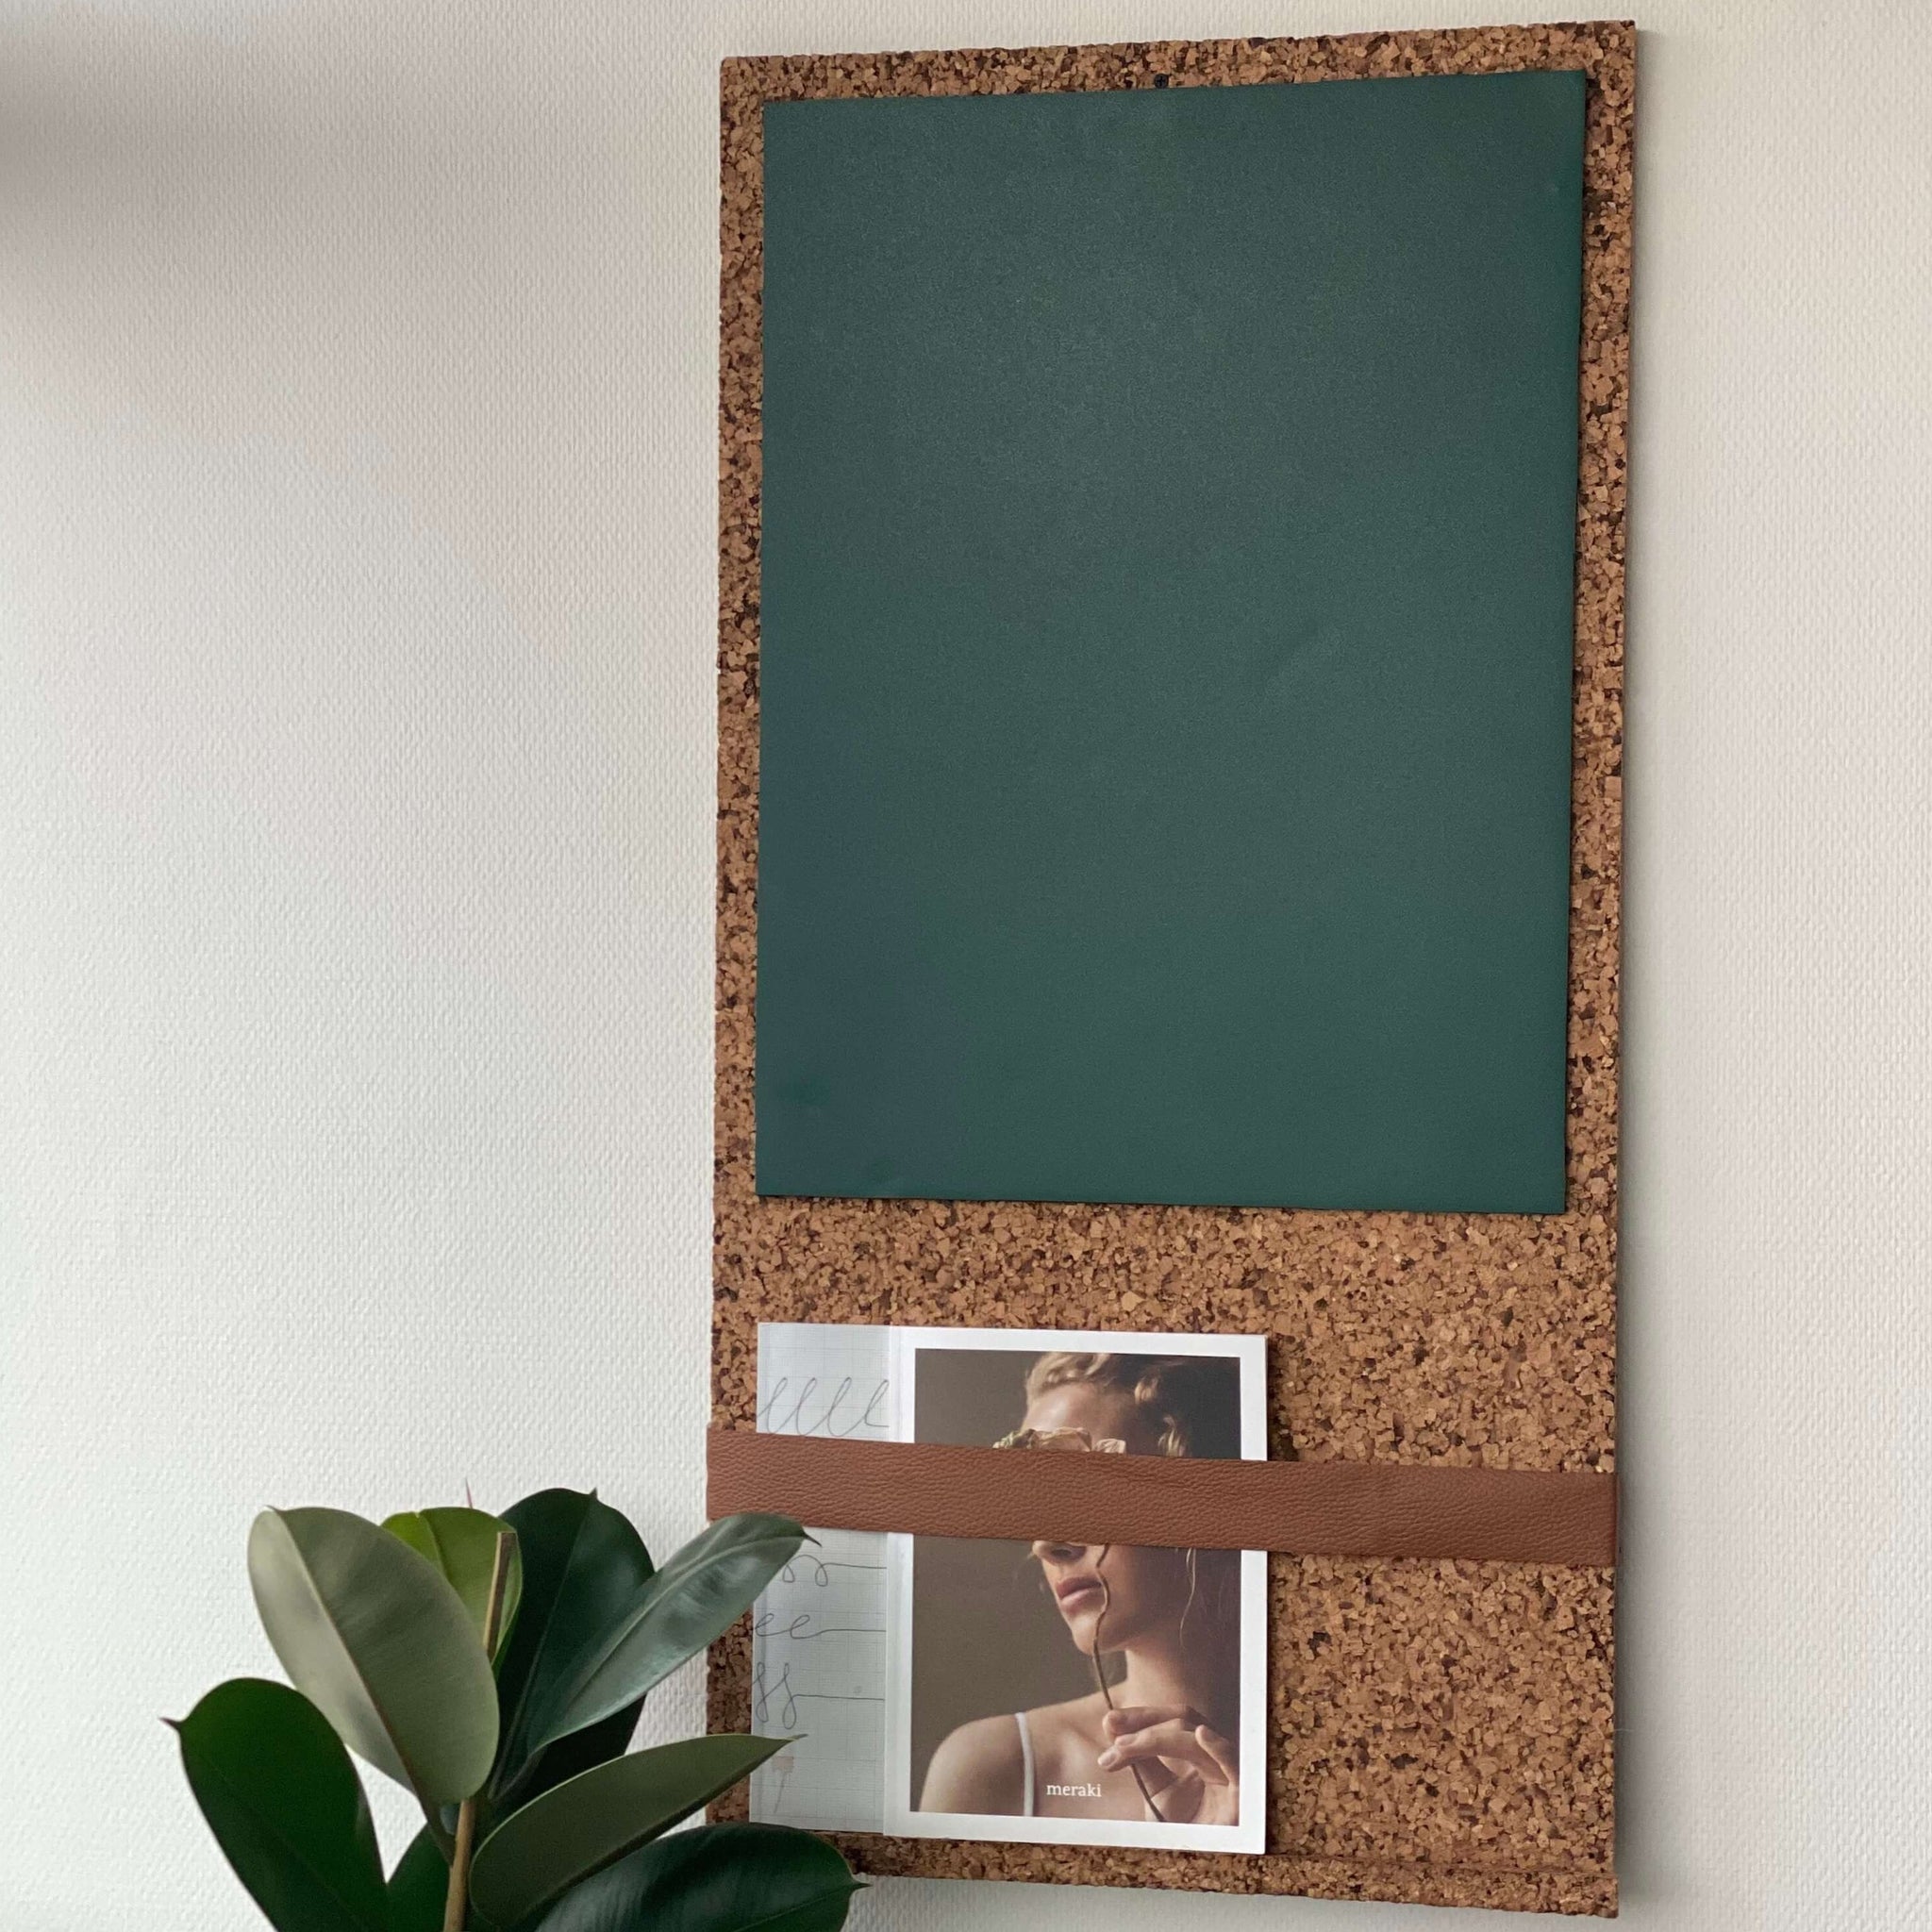 OEKOBOARD - Sandslebet opslagstavle med magnet- og grøn tavlefolie